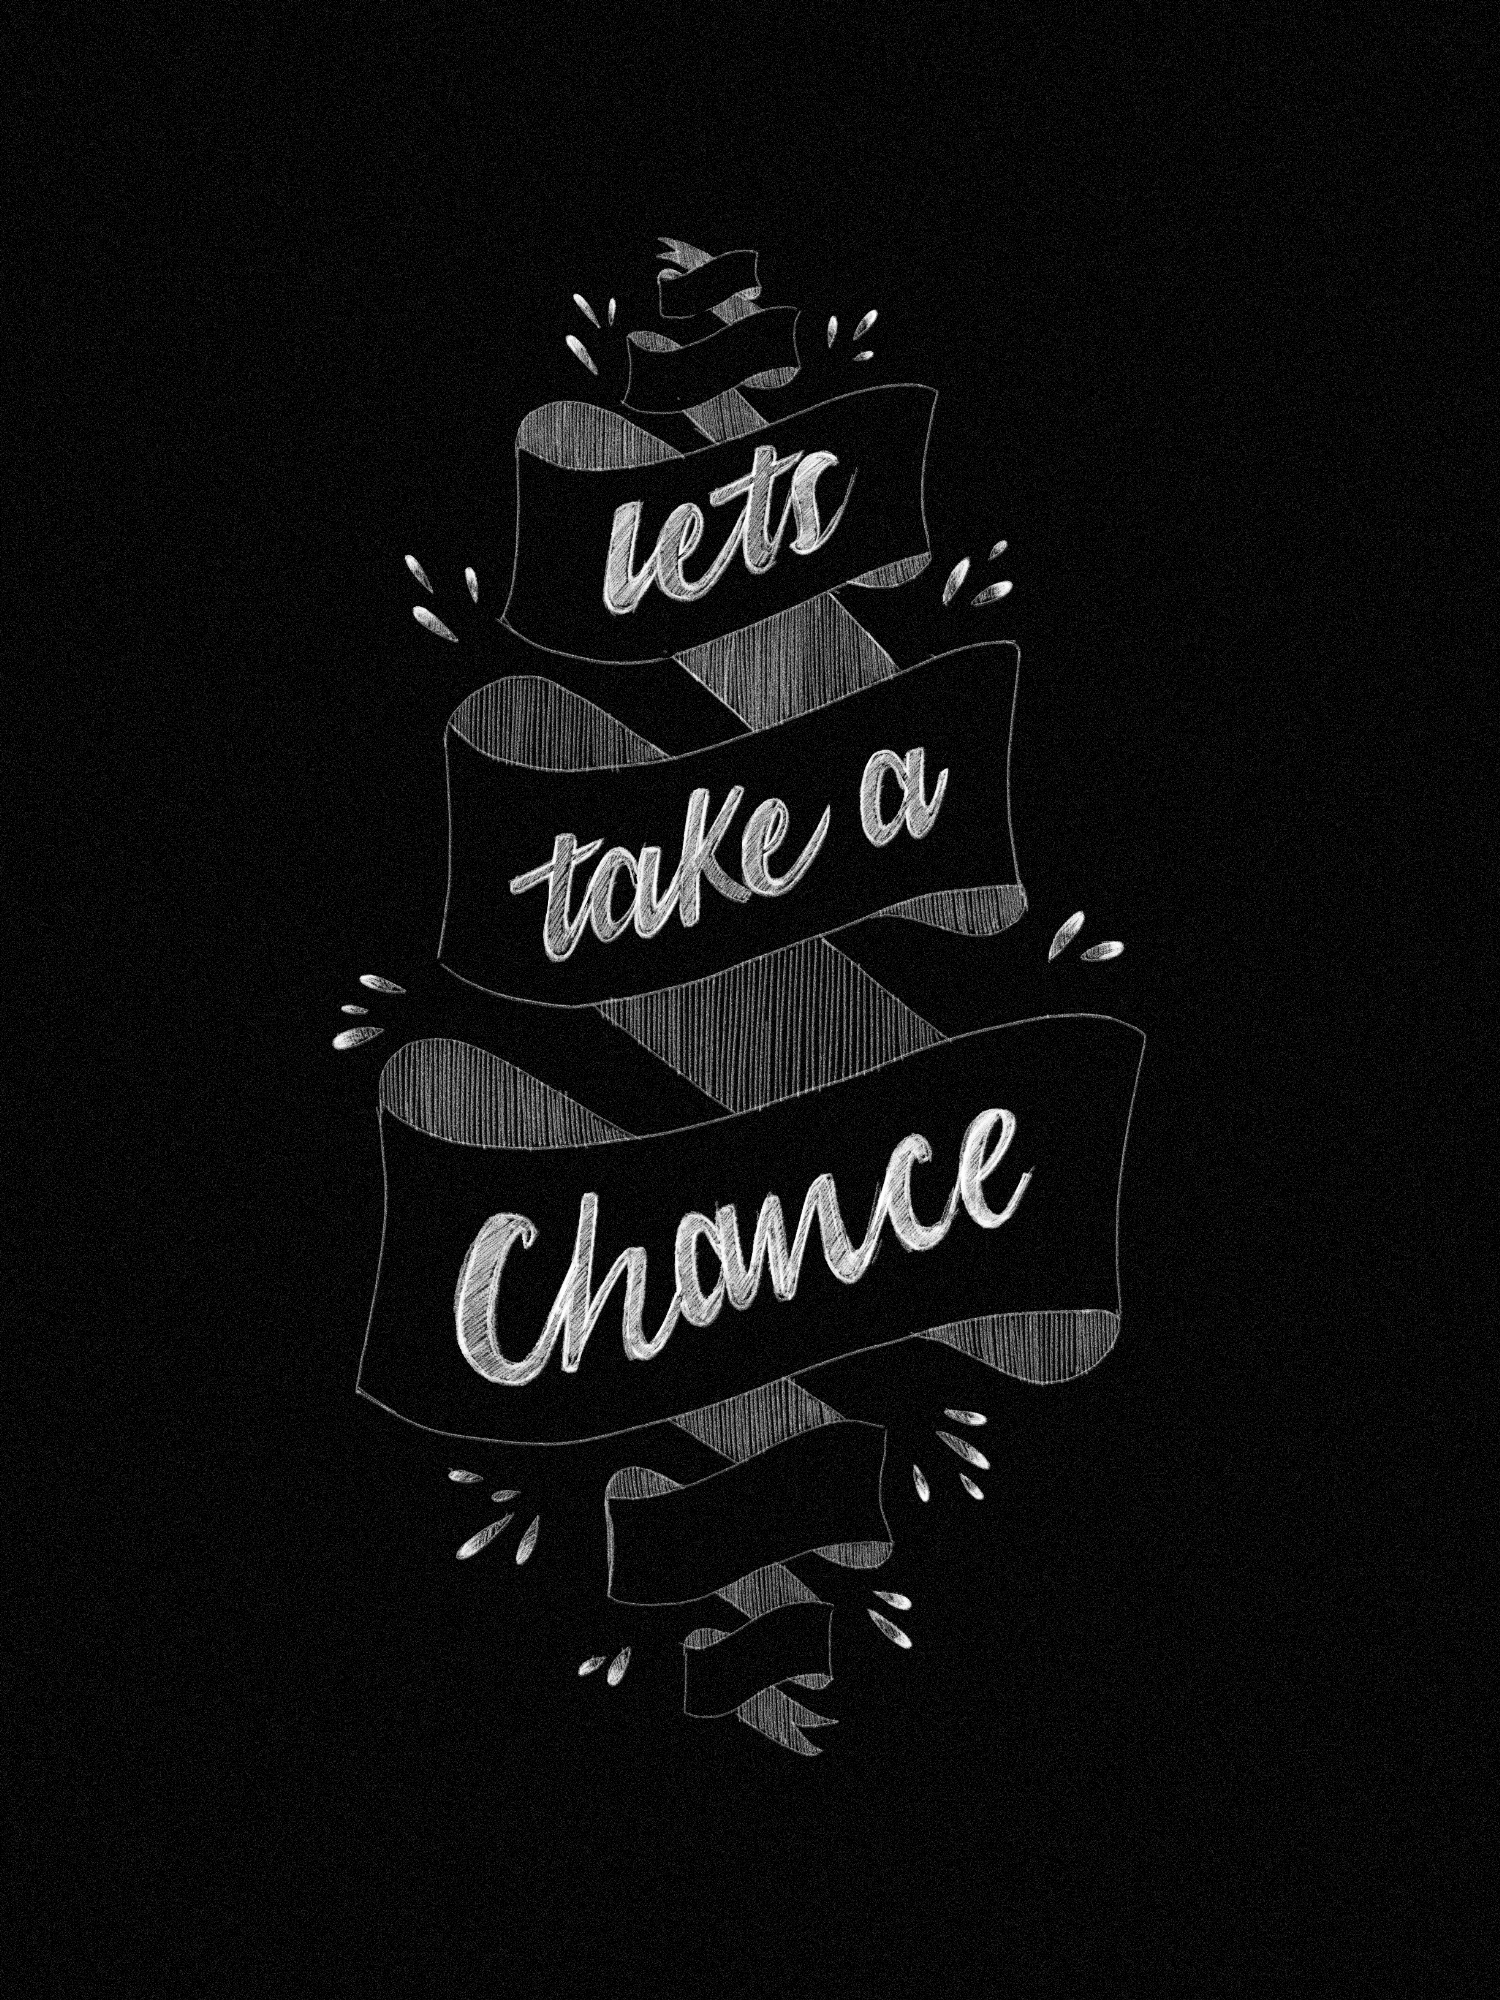 Let's take a chance